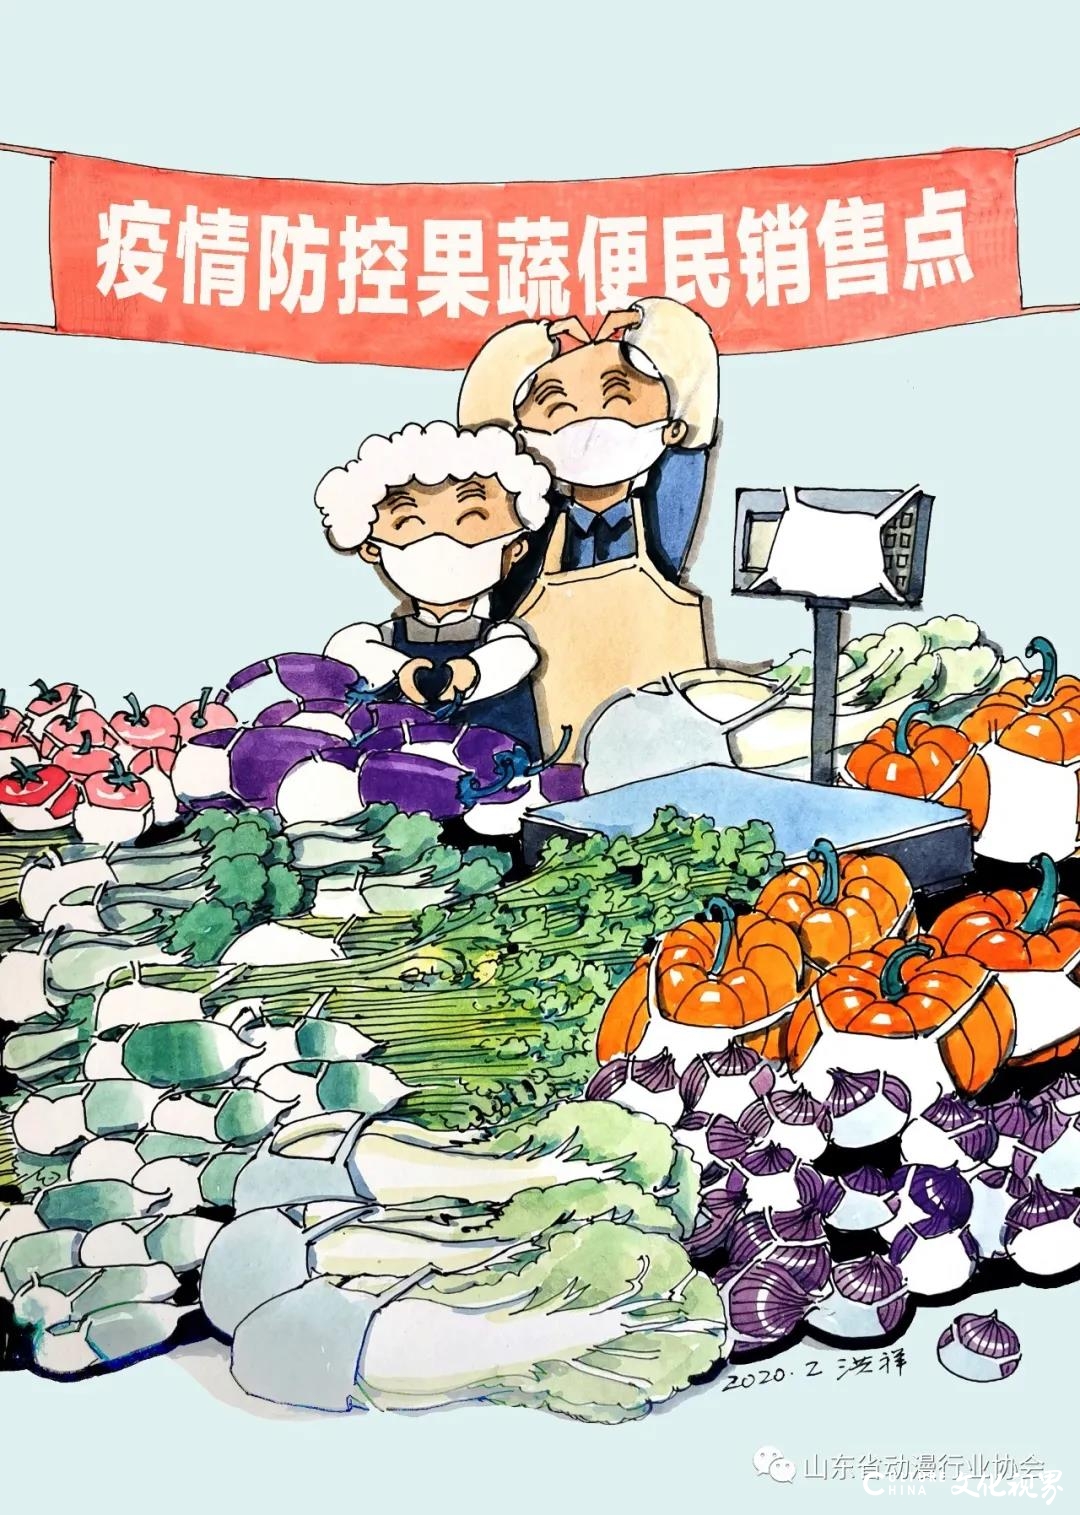 山东省动漫行业协会战“疫”作品《飞沫炸弹》《有力支持》《好梦》等引起广泛关注